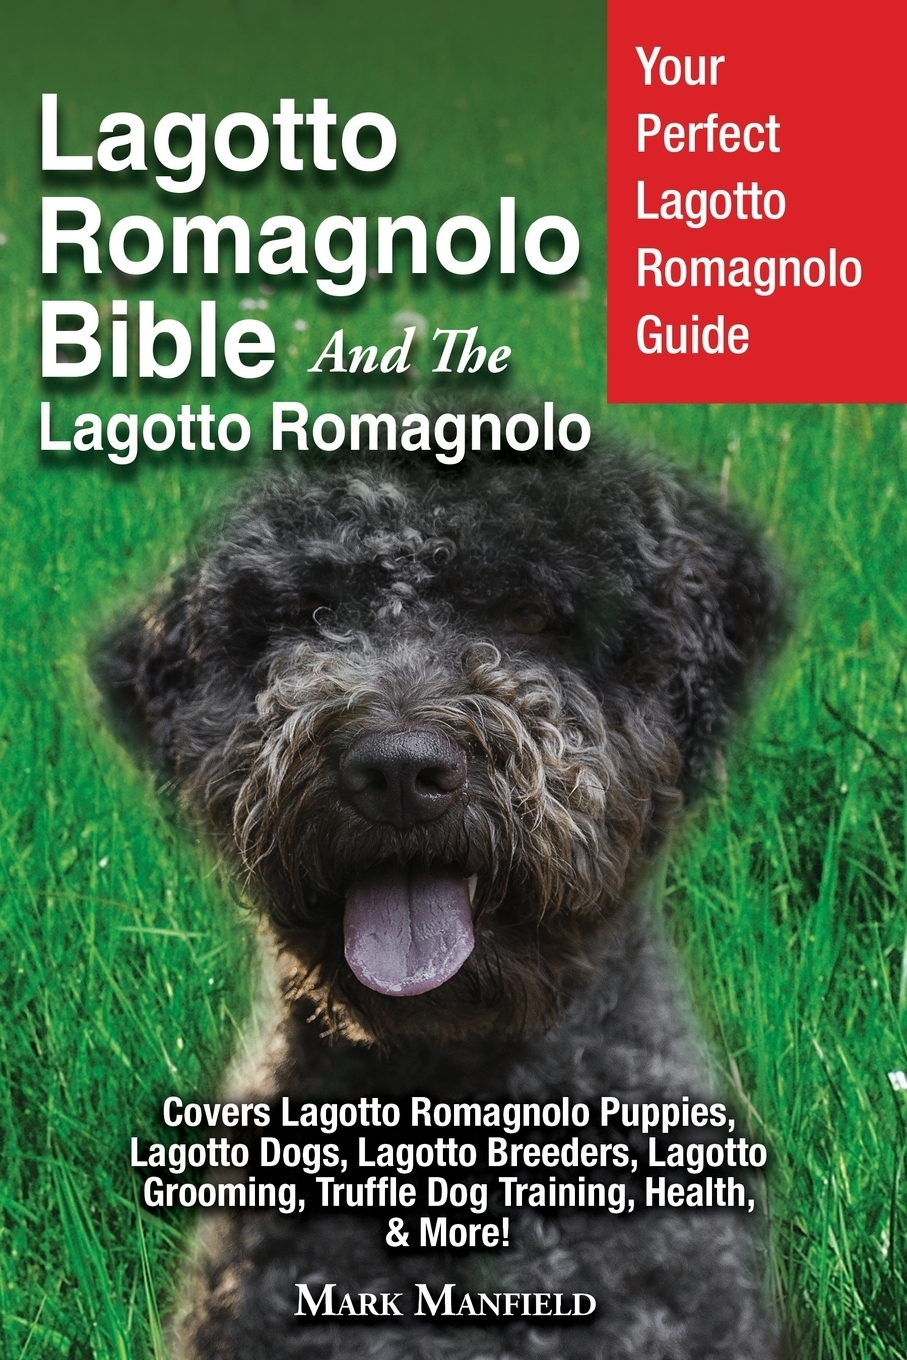 dog training bible